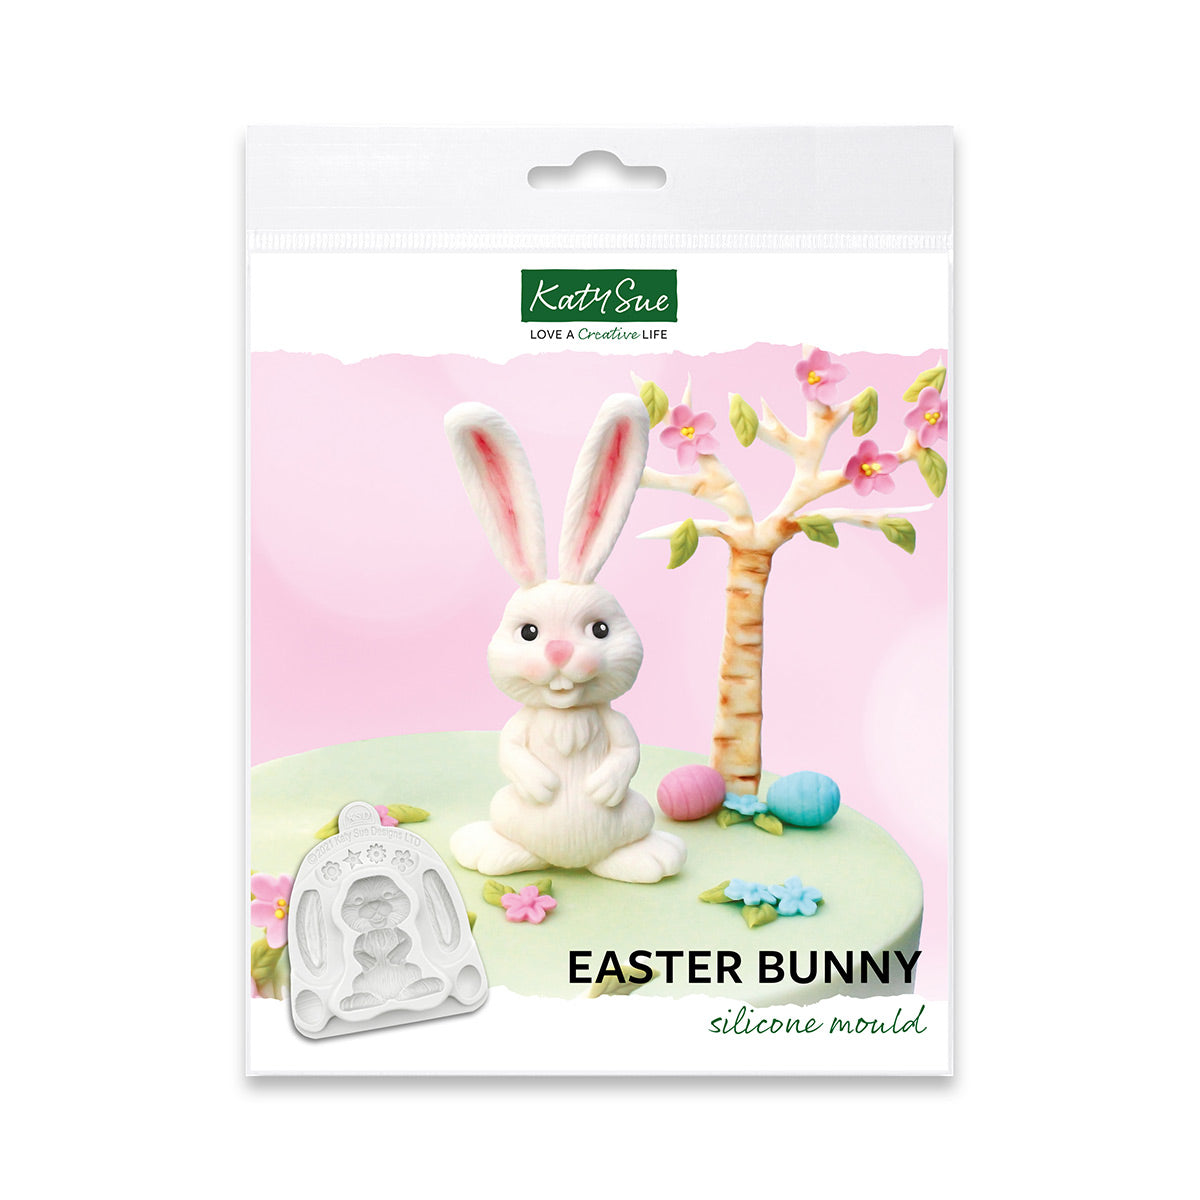 Make an Easter bunny